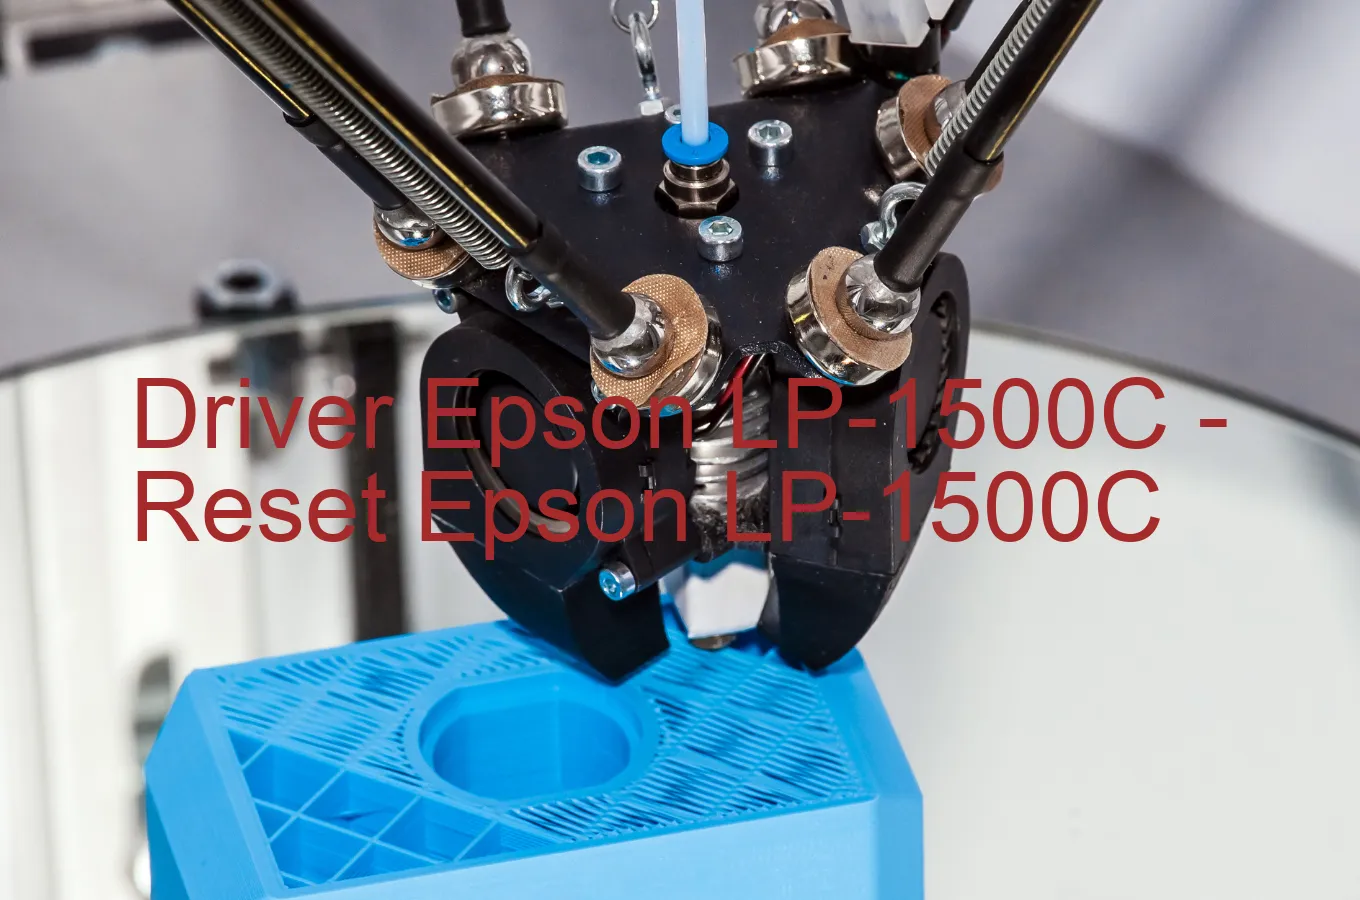 Epson LP-1500Cのドライバー、Epson LP-1500Cのリセットソフトウェア